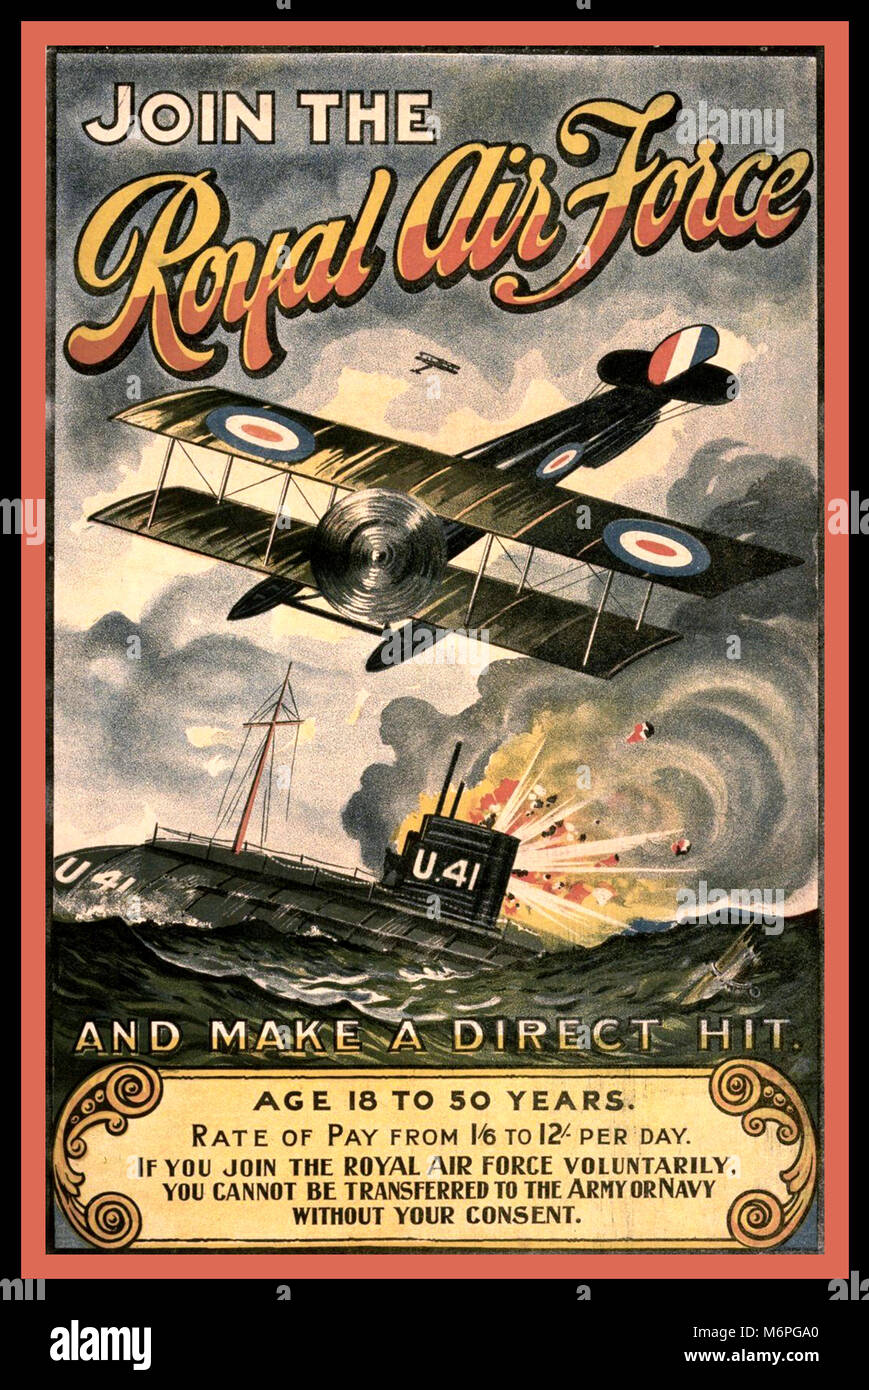 Le recrutement de la PREMIÈRE GUERRE MONDIALE POSTER VINTAGE UK RAF Royal Air Force britannique affiche utilisée pour recruter émis par la Royal Air Force pendant la Première Guerre mondiale, 1914-1918. Il a été produit à demander à des hommes de 18 à 50 ans pour rejoindre la Royal Air Force et de faire de coup direct. Illustré est un "direct hit" sur un sous-marin allemand U41 Banque D'Images